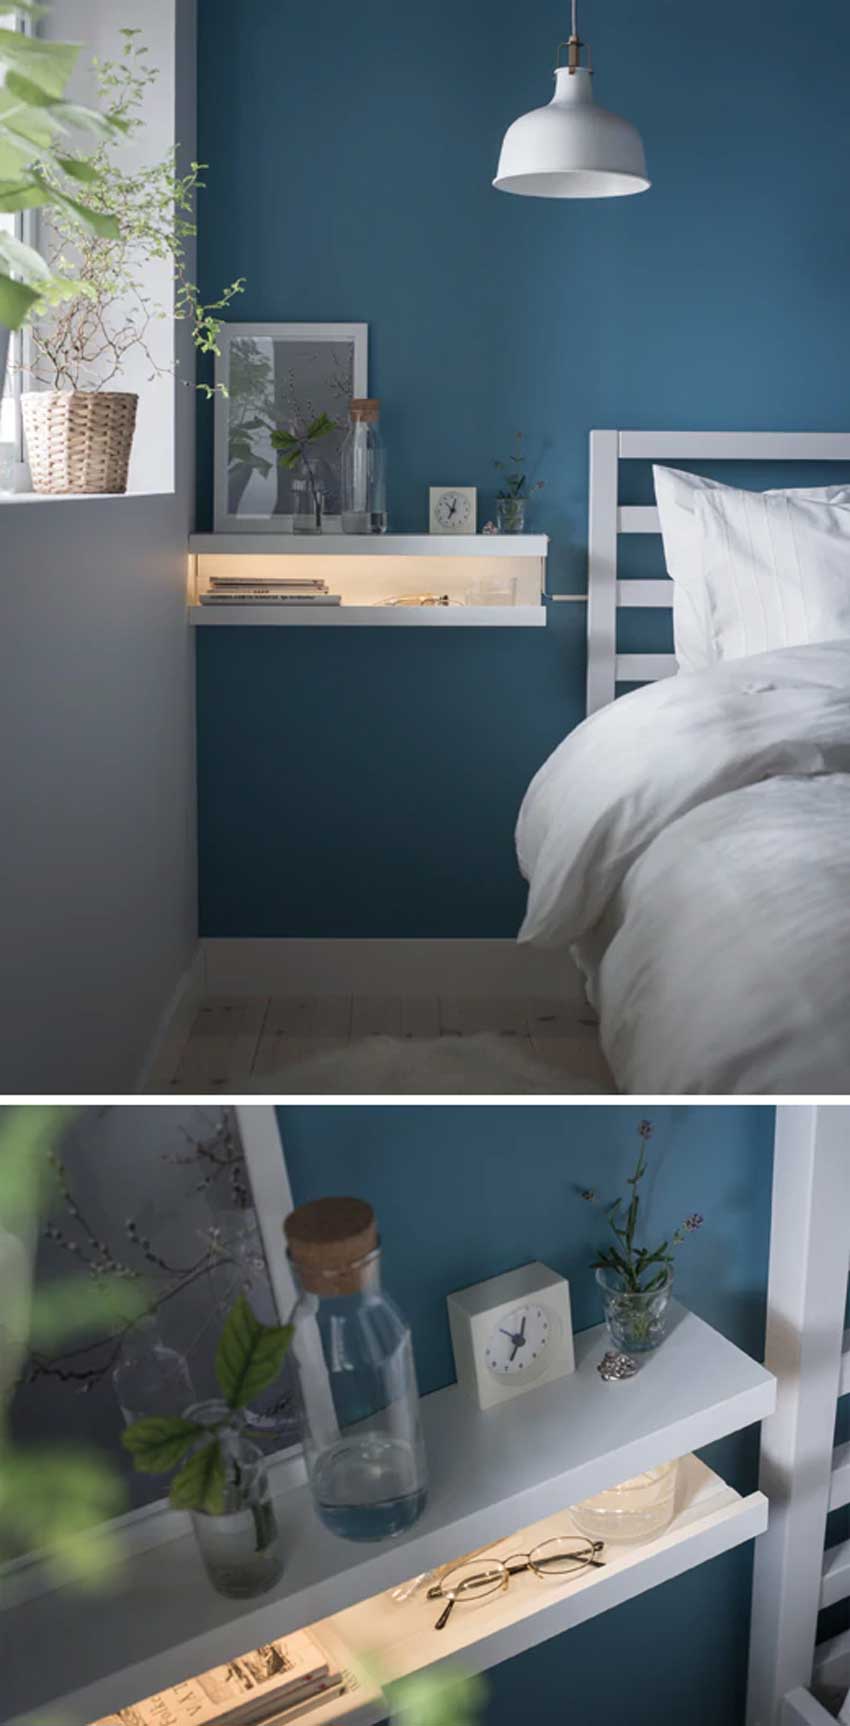 Mensole IKEA Mosslanda usate in camera da letto come comodino a parete con aggiunta di luci led 